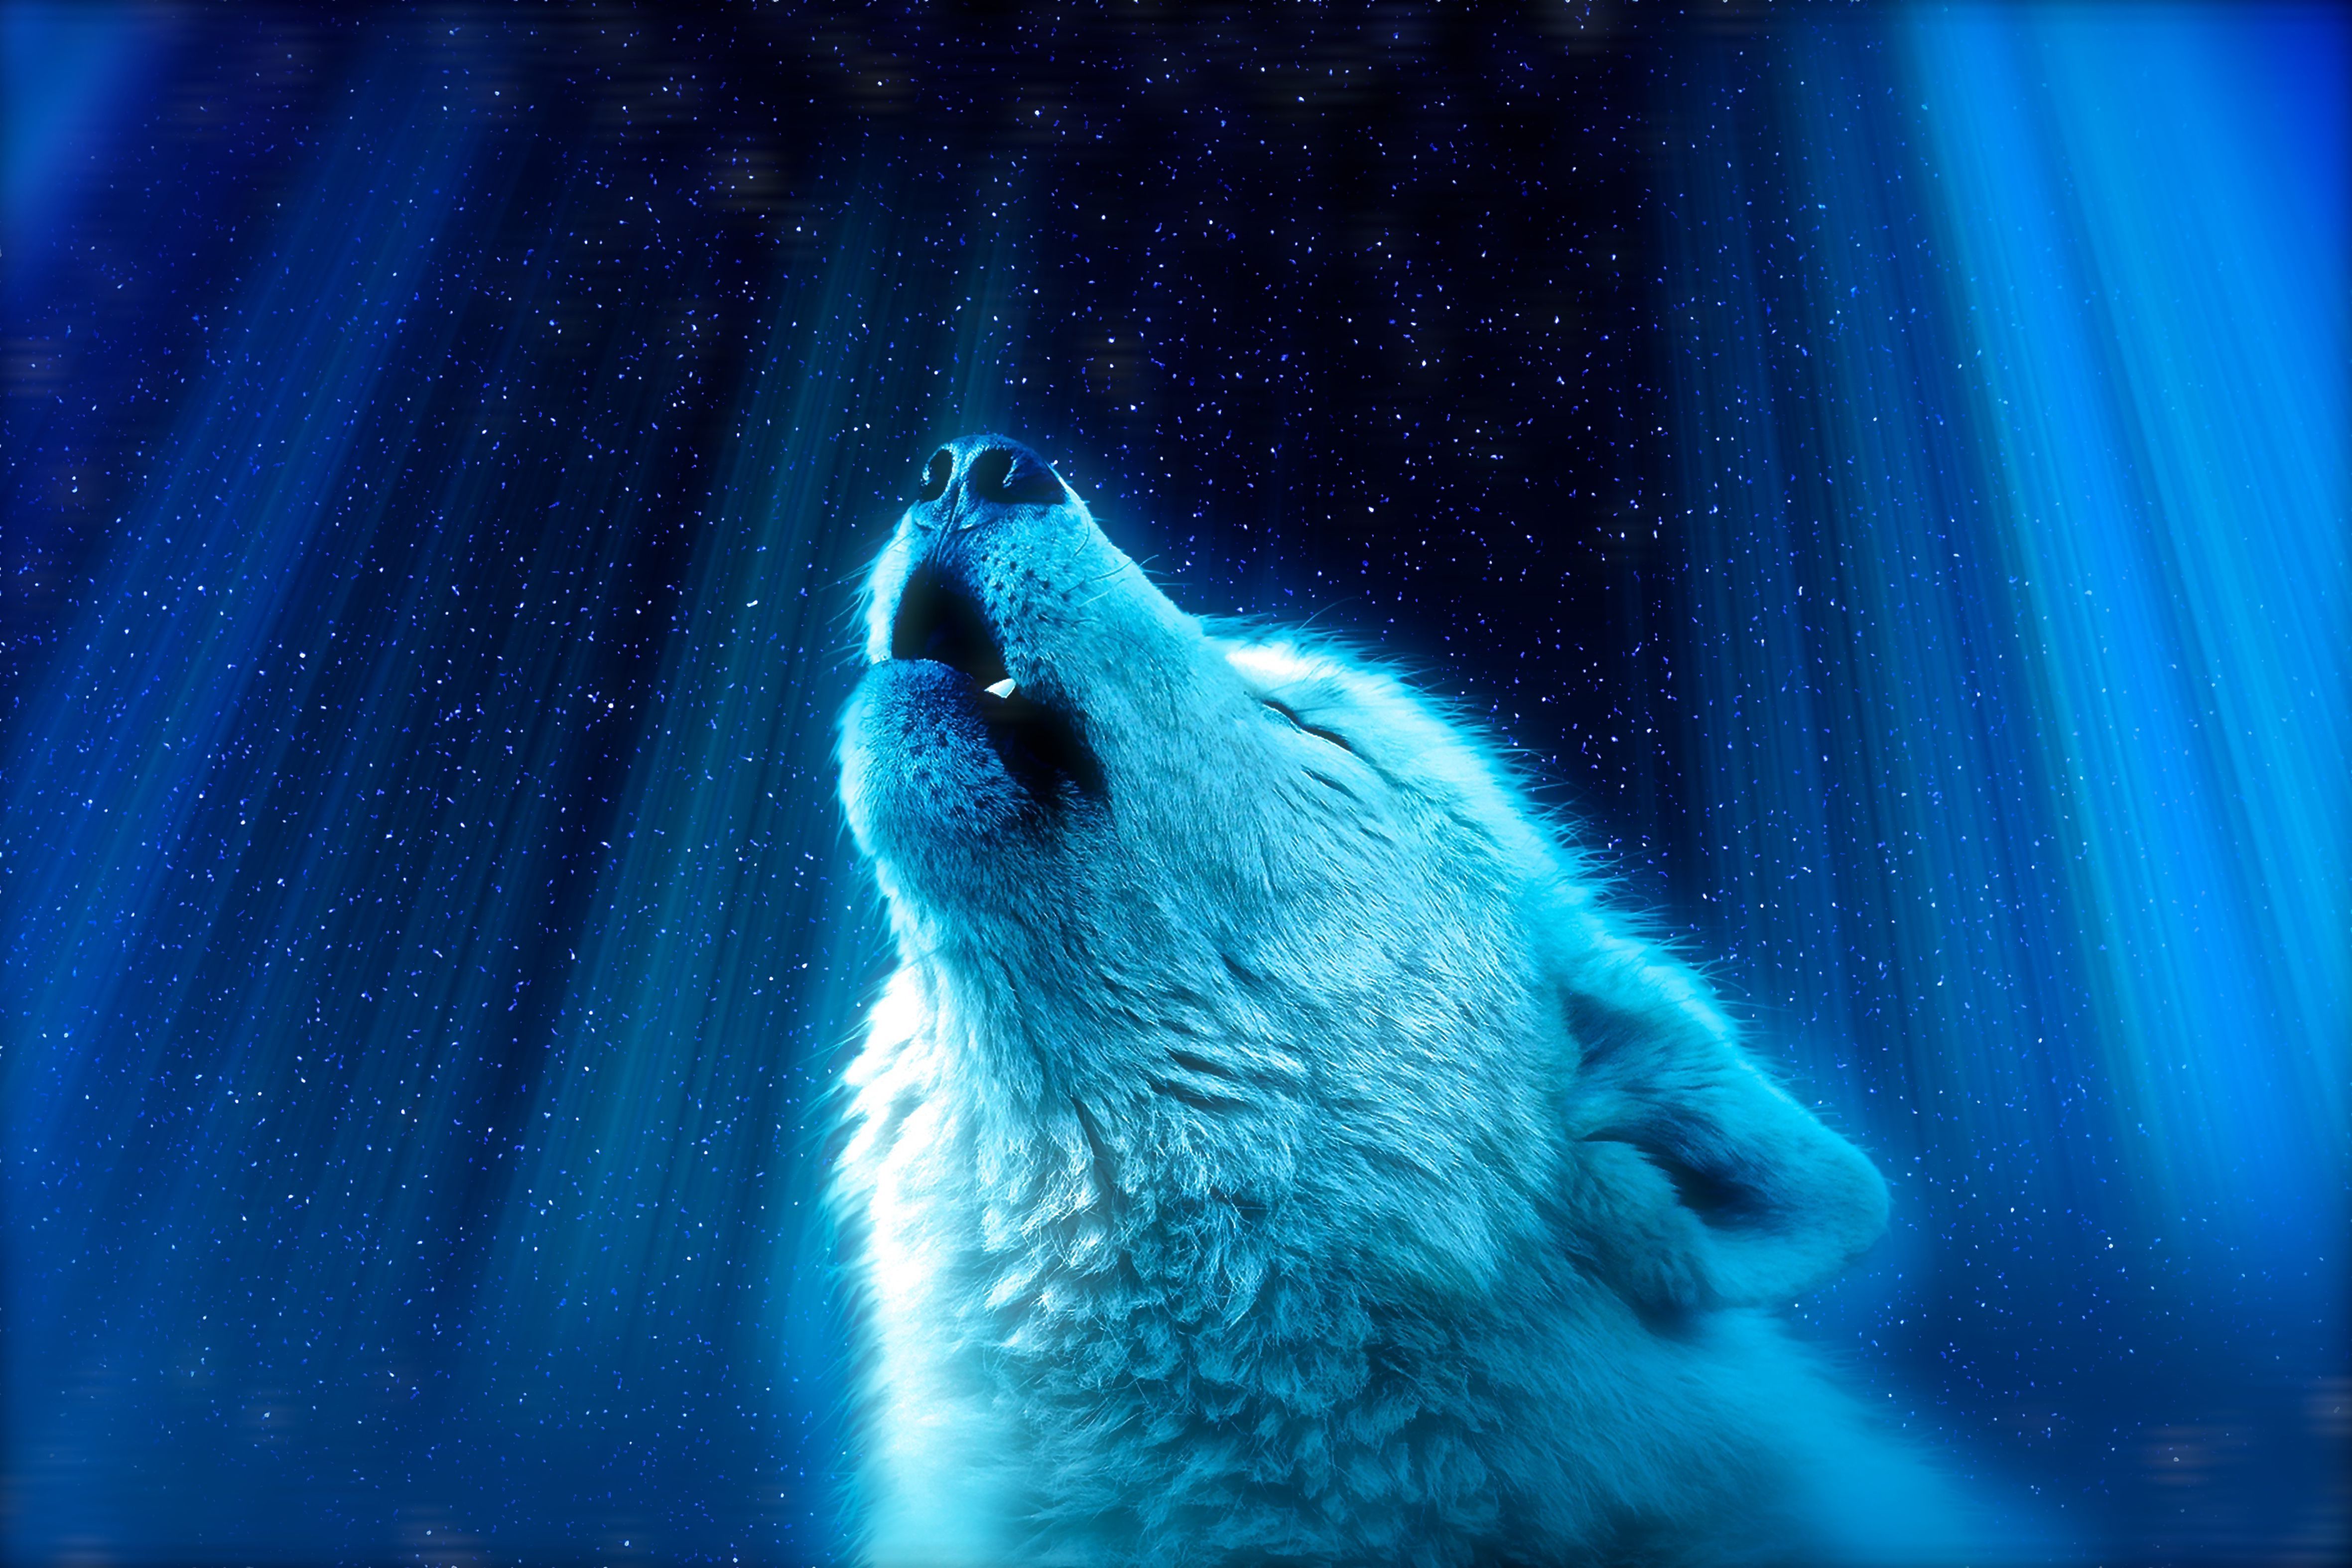  Coolsten Hintergrundbild 4722x3148. Kostenlose Hintergrundbilder Weißer Wolf im Wald, Bilder Für Ihren Desktop Und Fotos